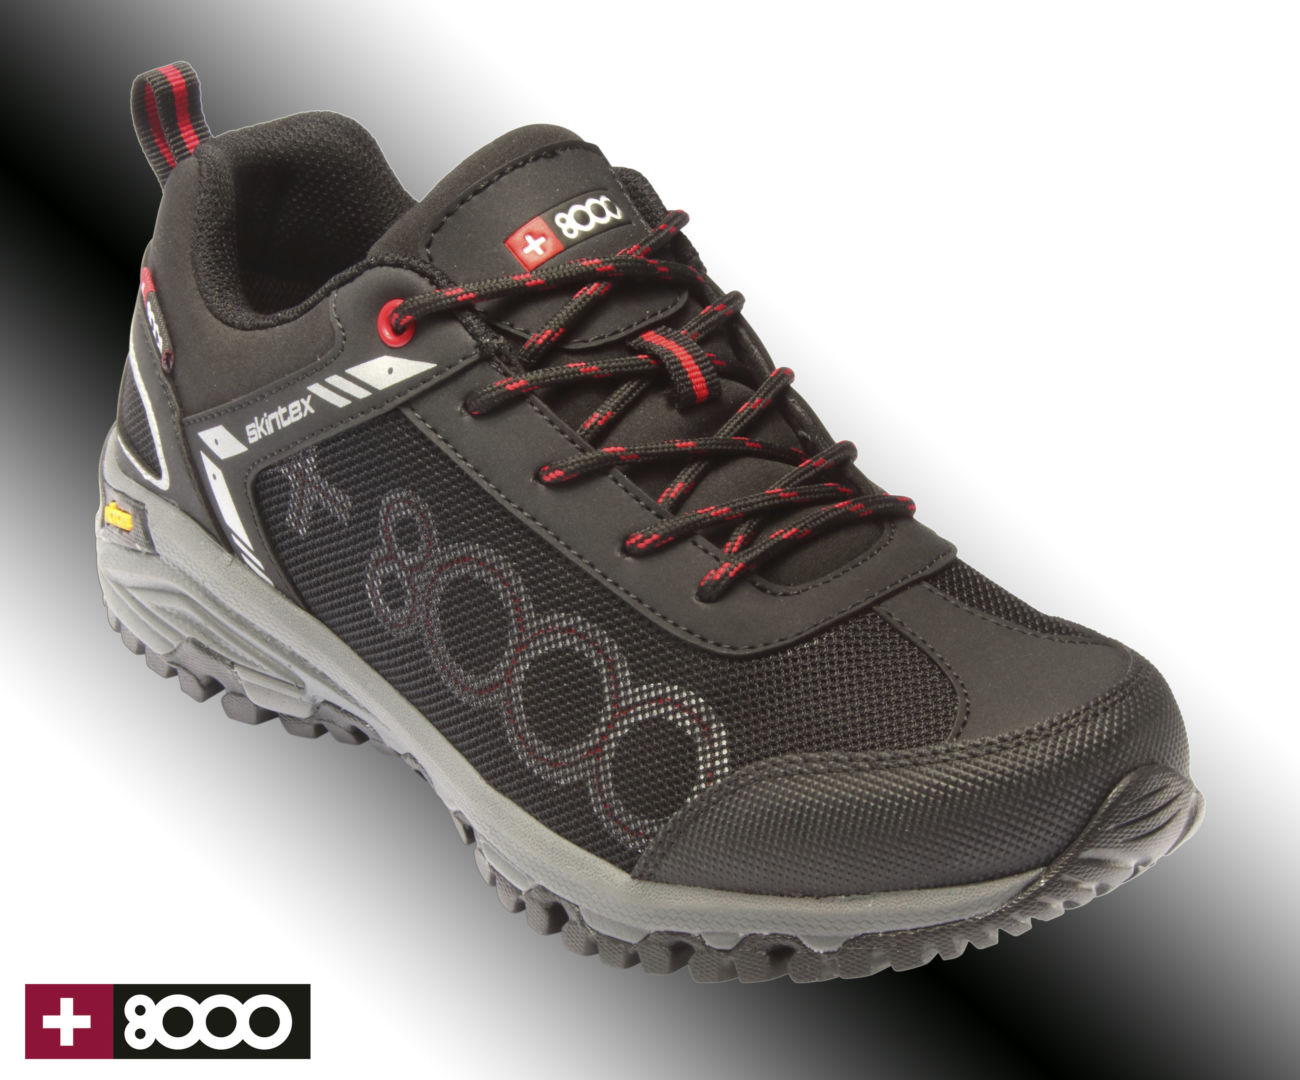 calzado-+8000-outdoor-aguirre-y-cia - Diffusion Sport